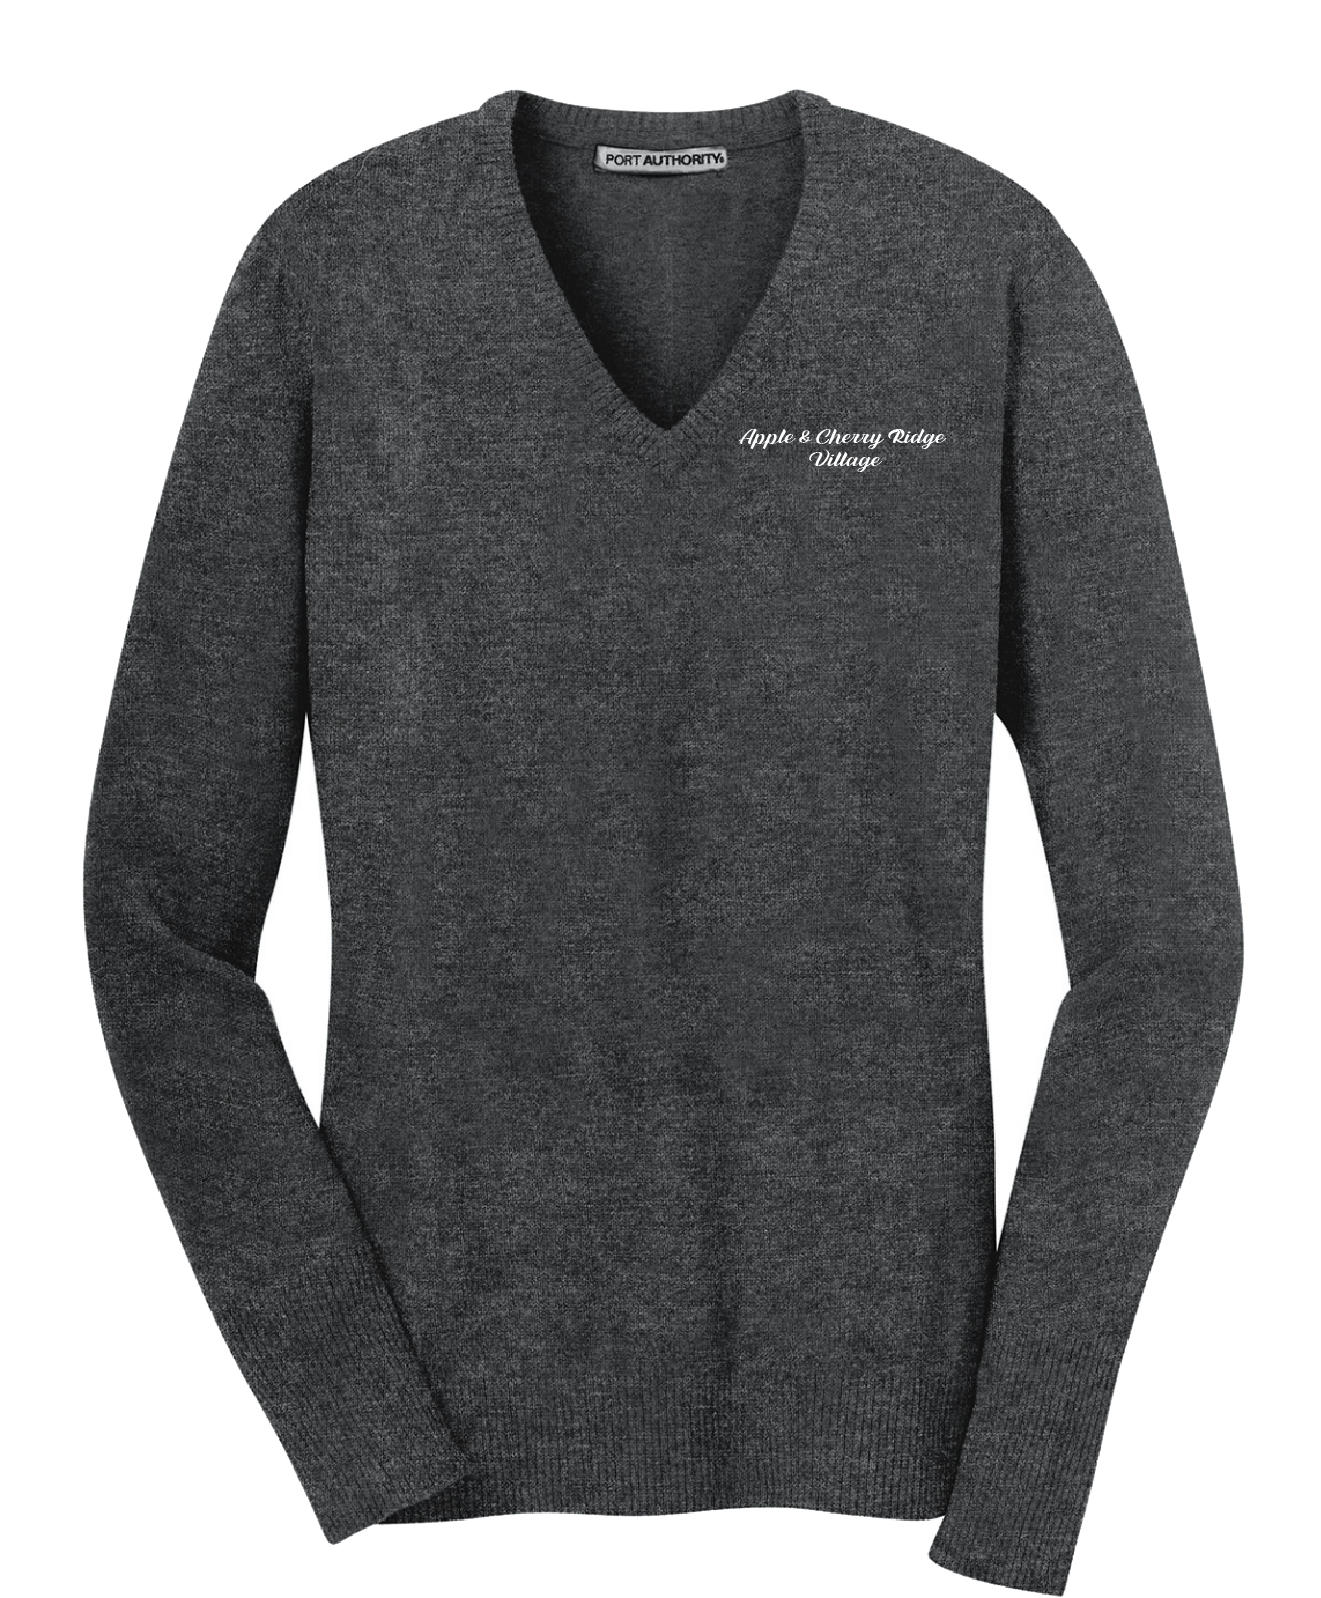 Apple & Cherry Ridge Village - Port Authority® Ladies V-Neck Sweater